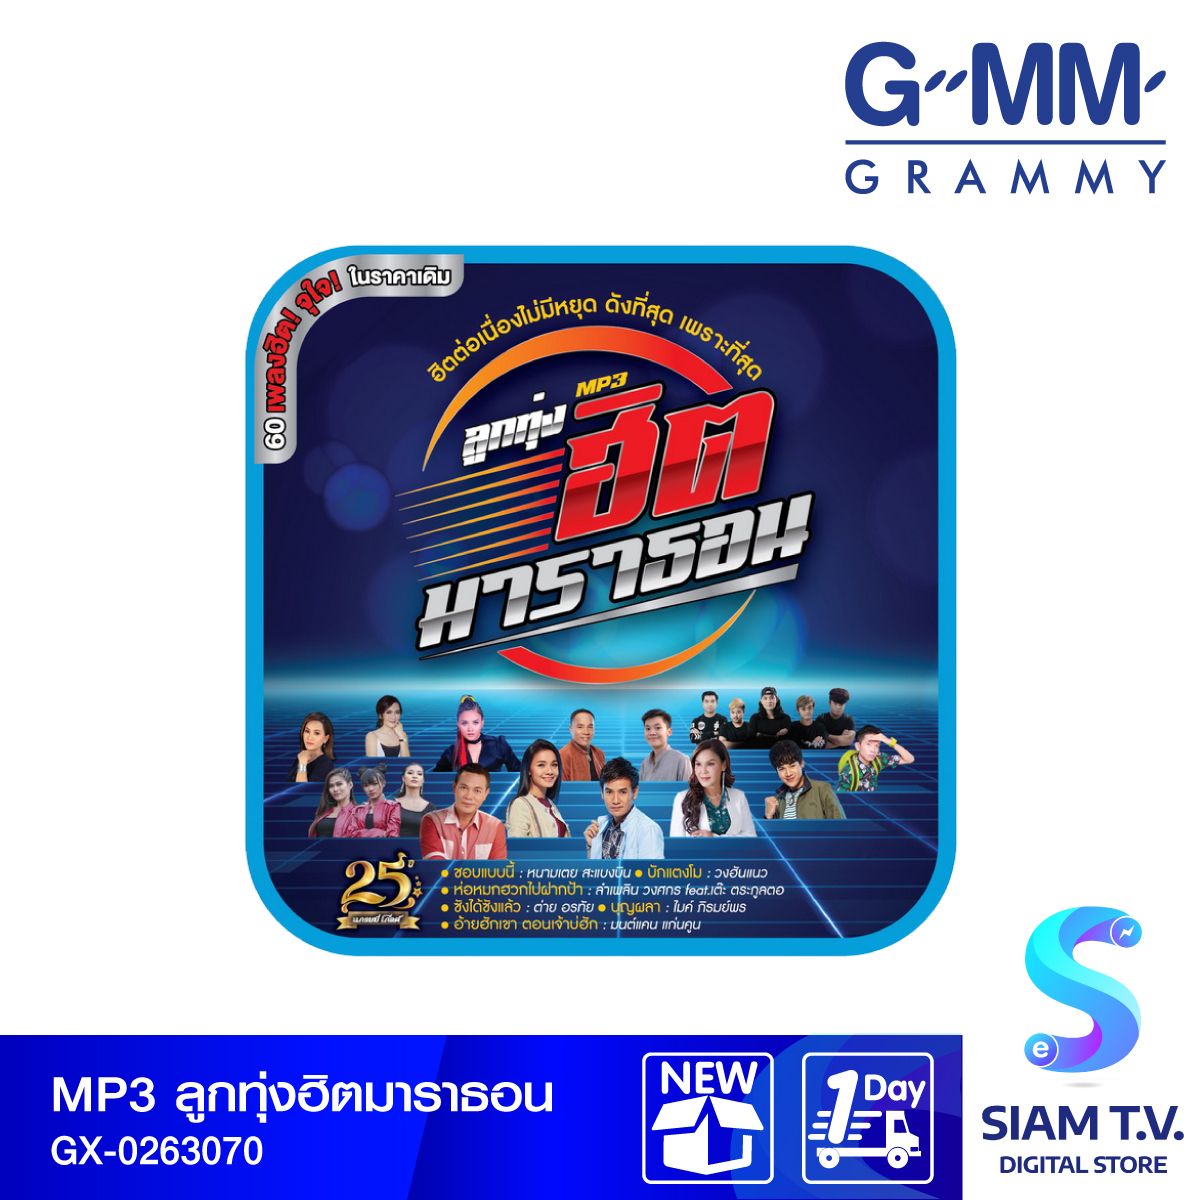 GMM GRAMMY MP3 ลูกทุ่งฮิตมาราธอน